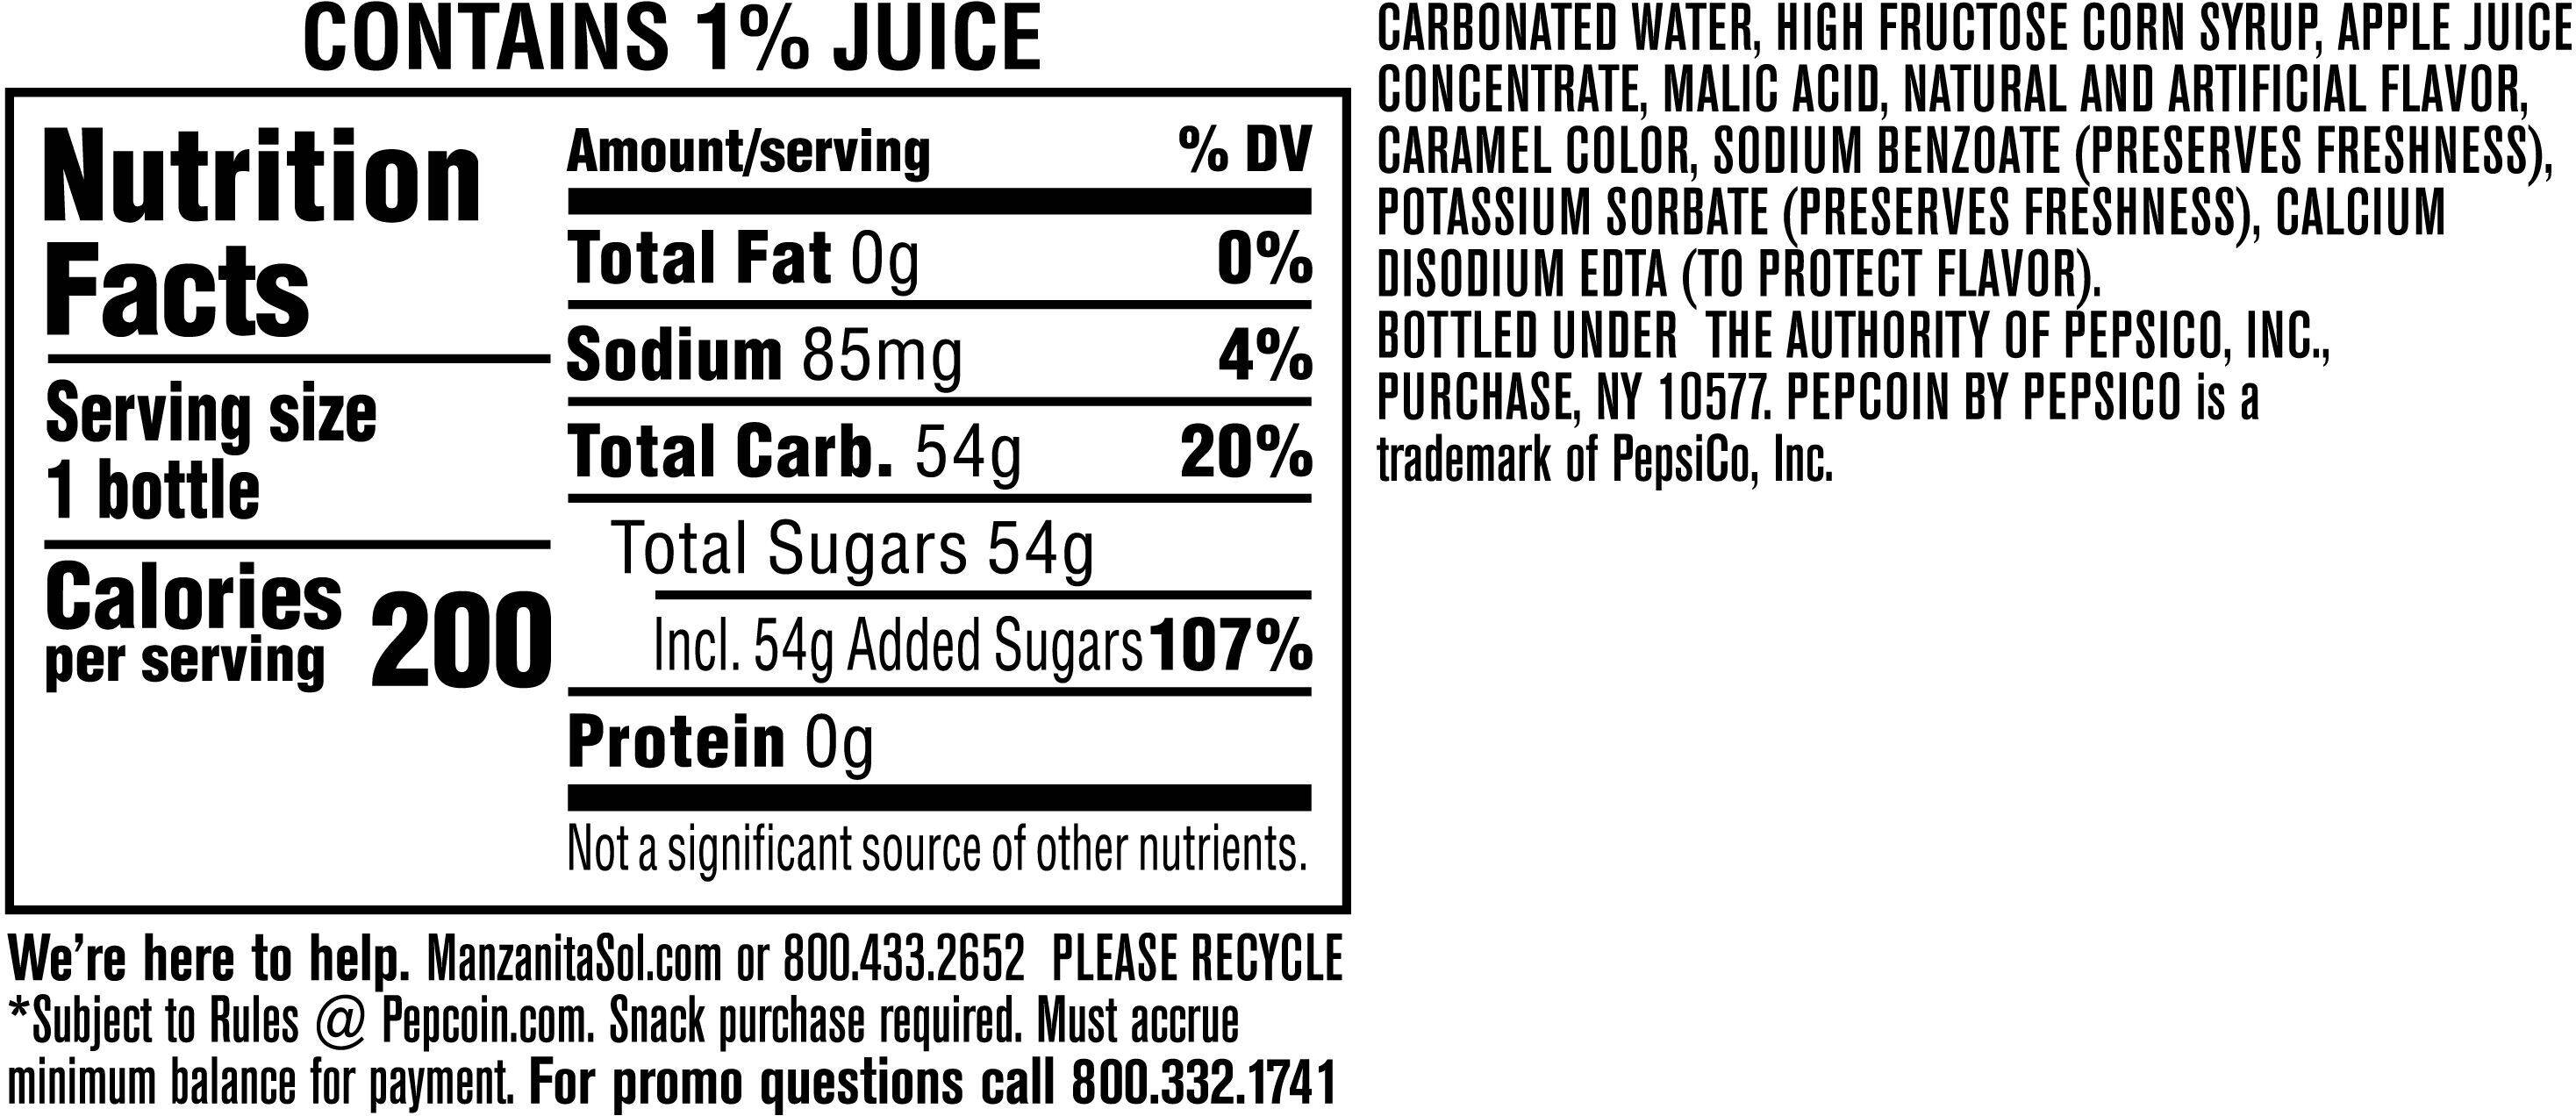 Image describing nutrition information for product Manzanita Sol Apple